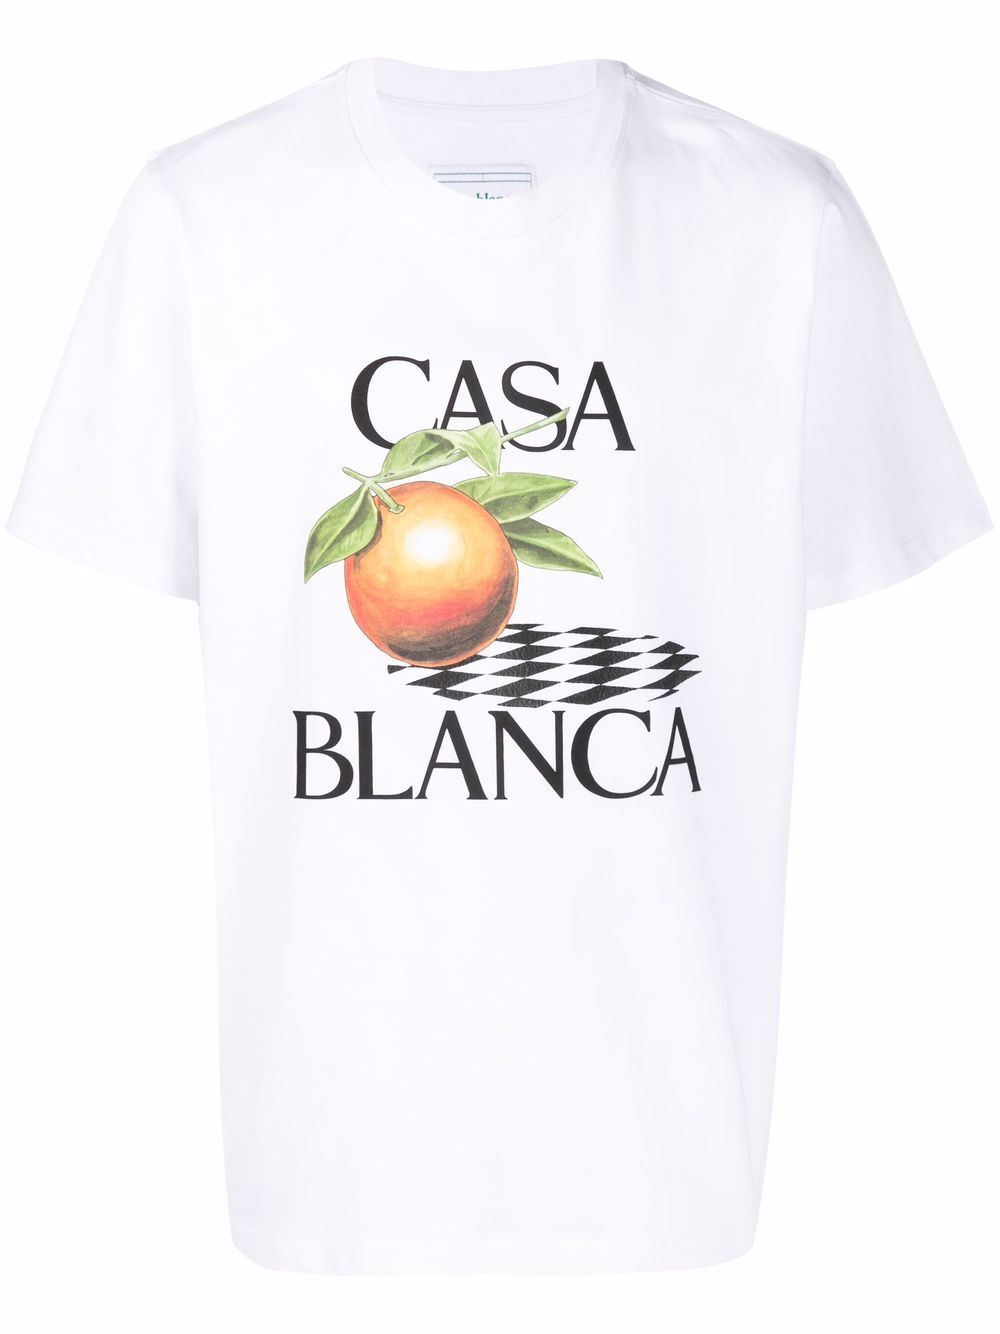 фото Casablanca футболка с принтом